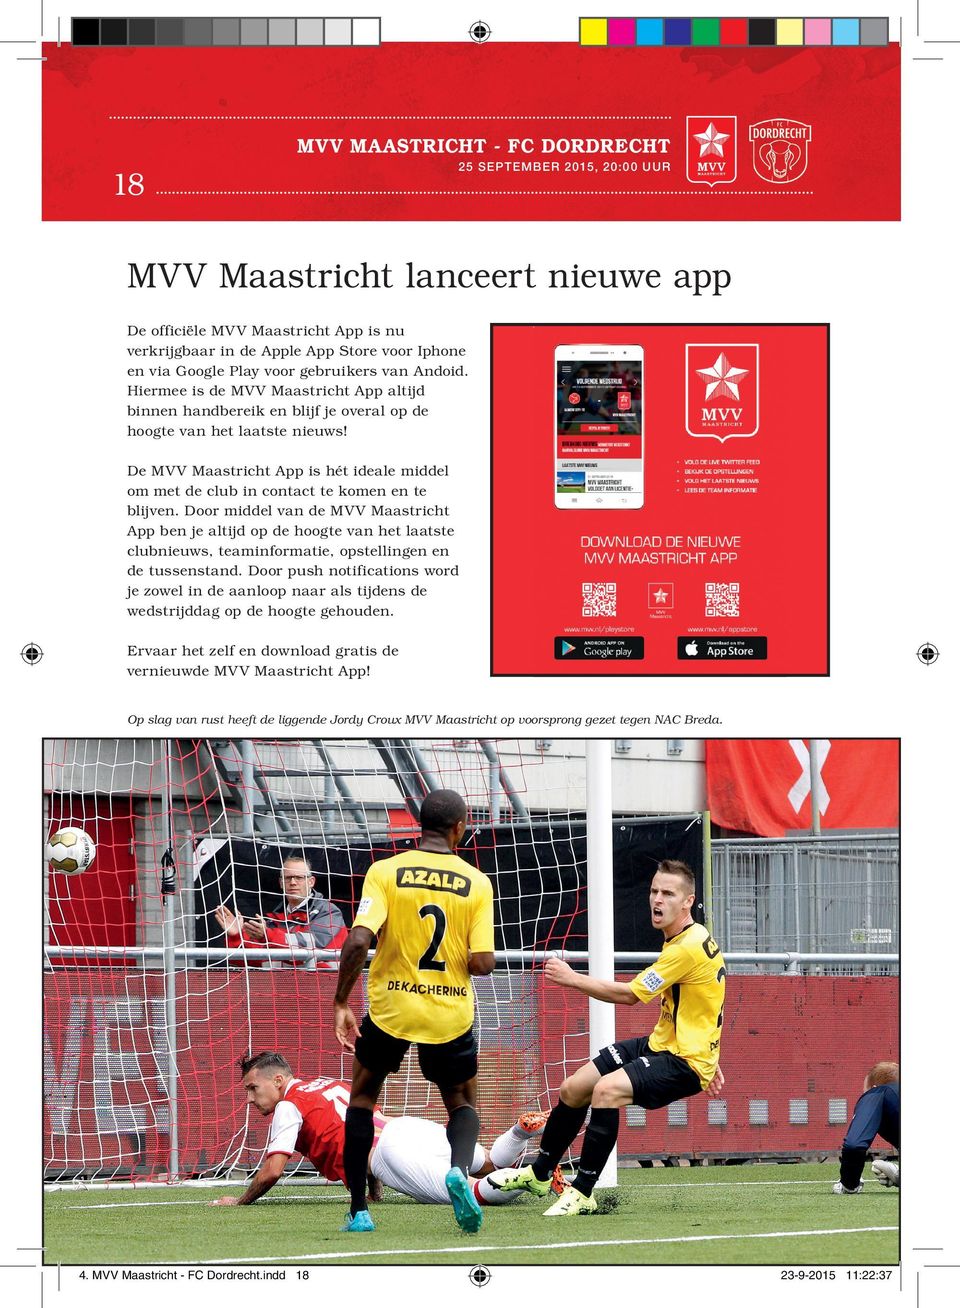 De MVV Maastricht App is hét ideale middel om met de club in contact te komen en te blijven.